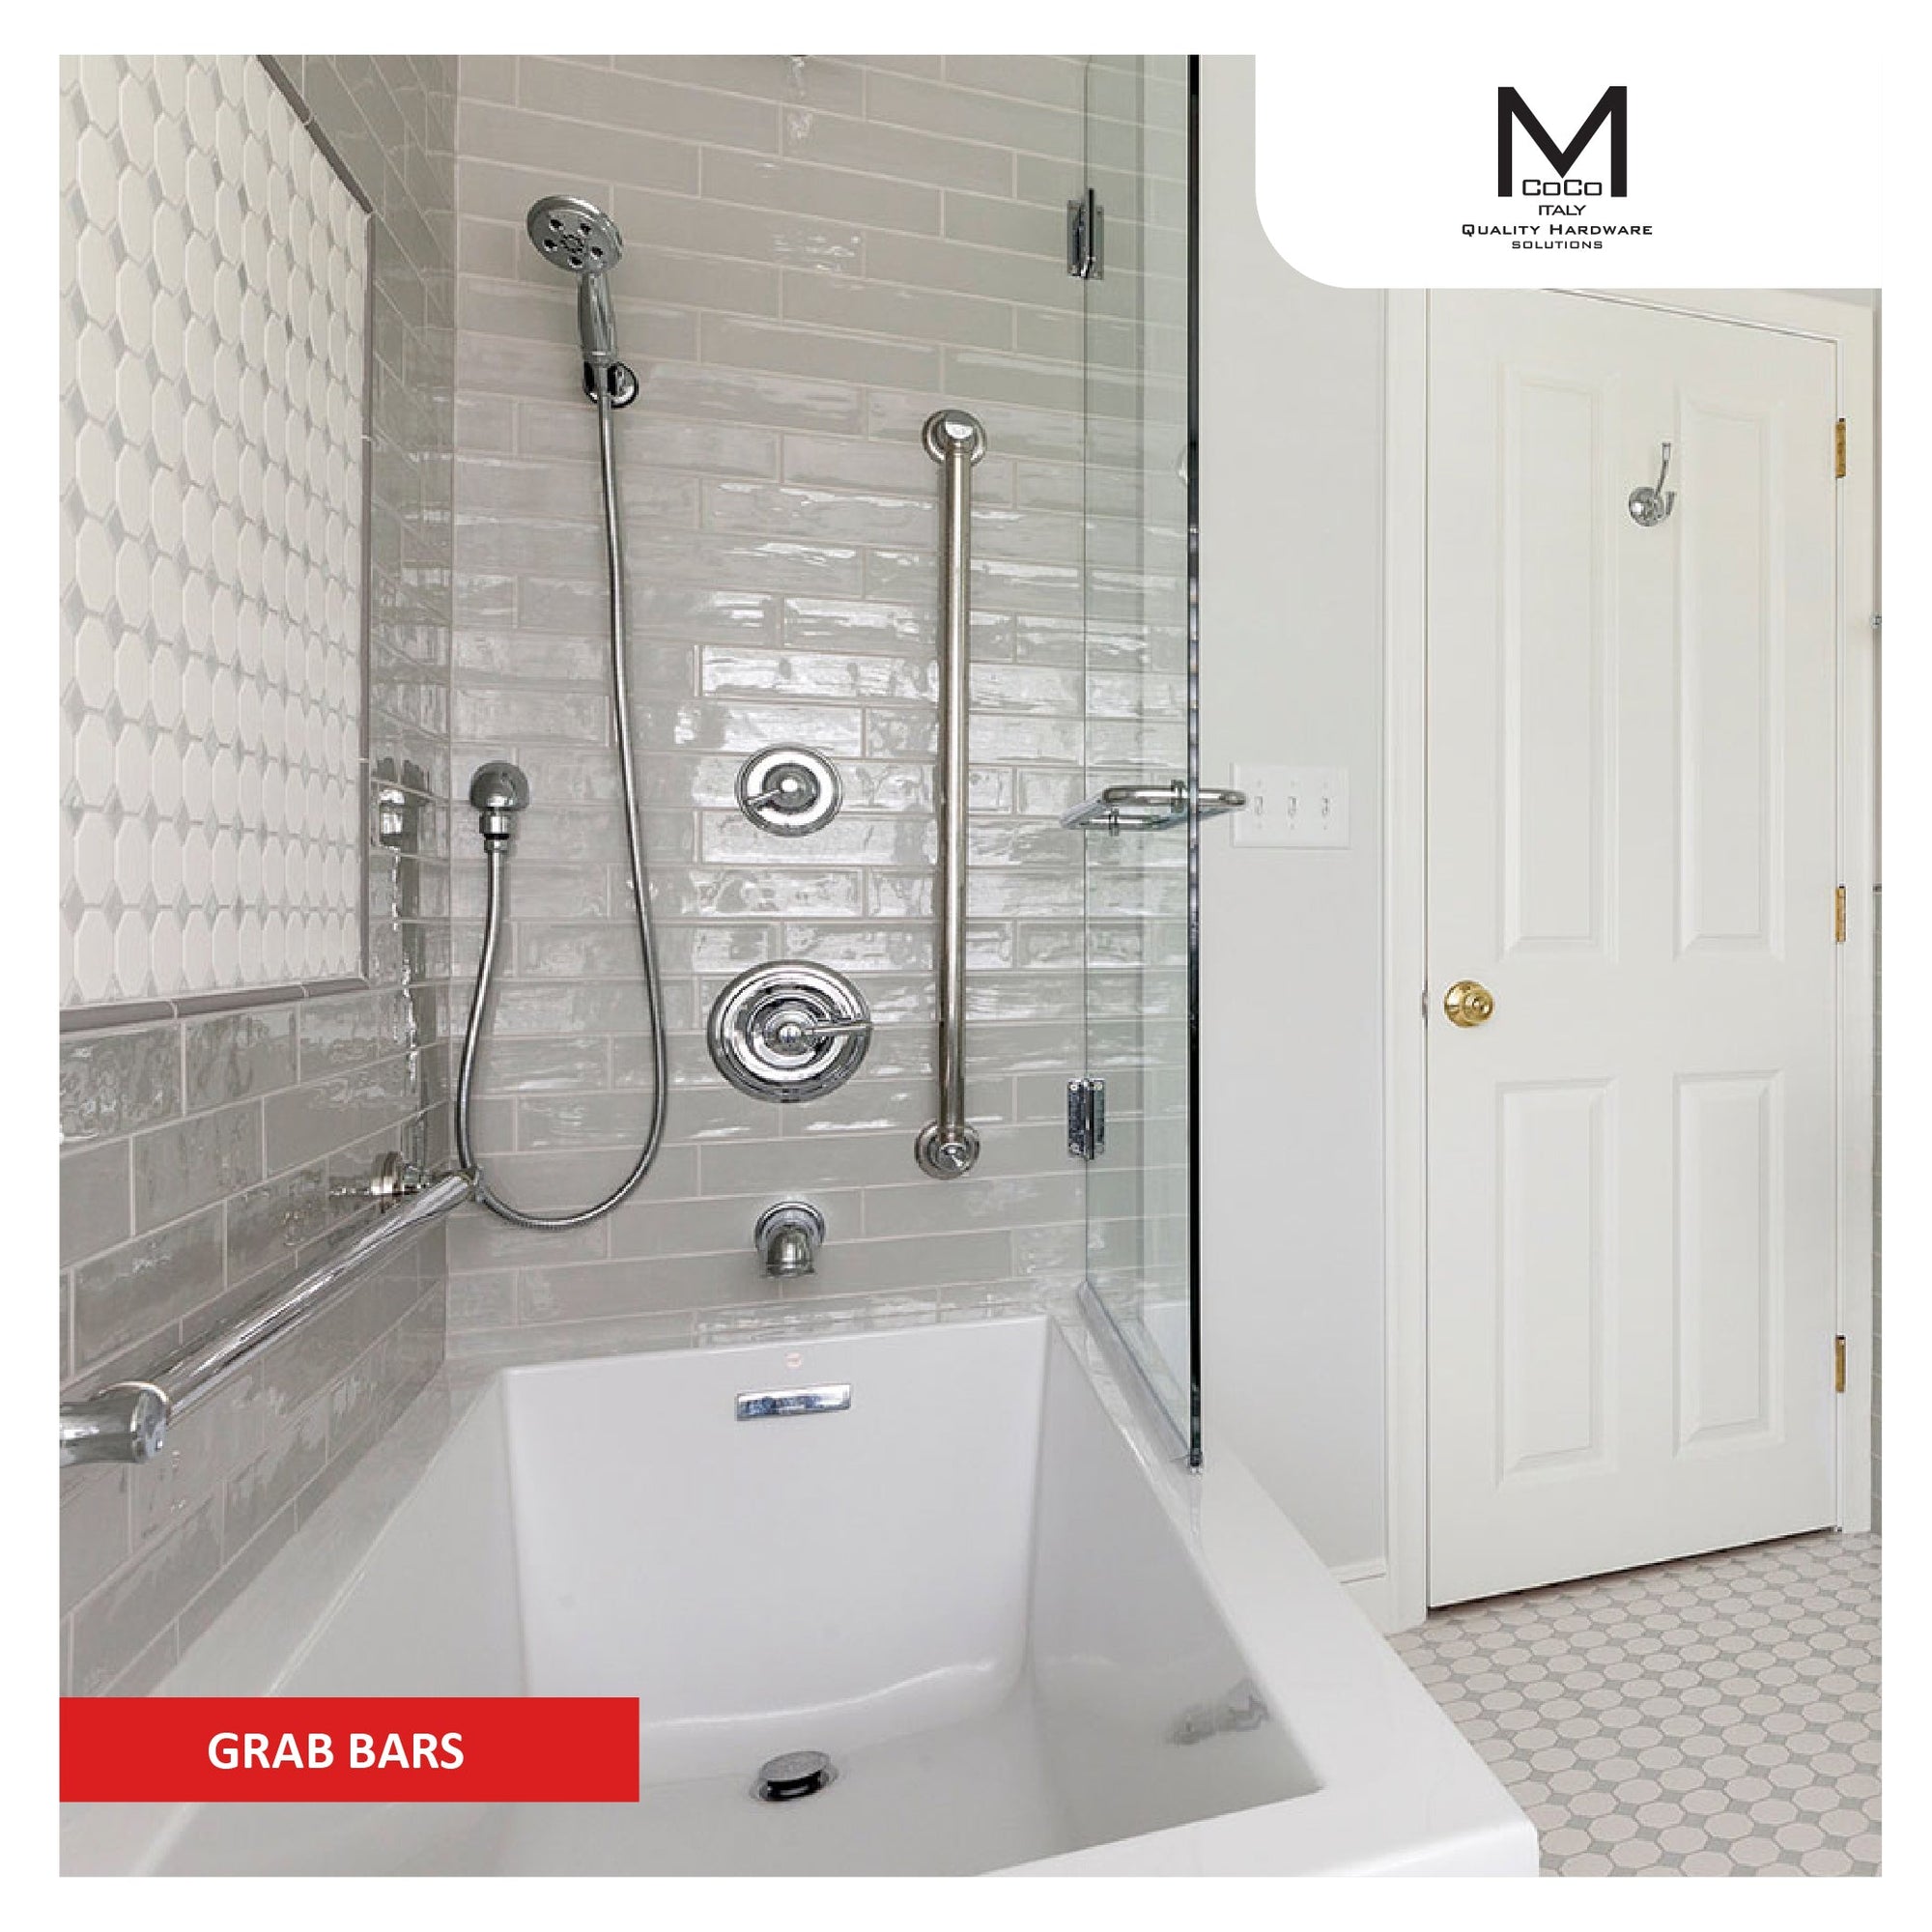 Mcoco Grab Bars - Bathroom Safety Aids - M. M. Noorbhoy & Co